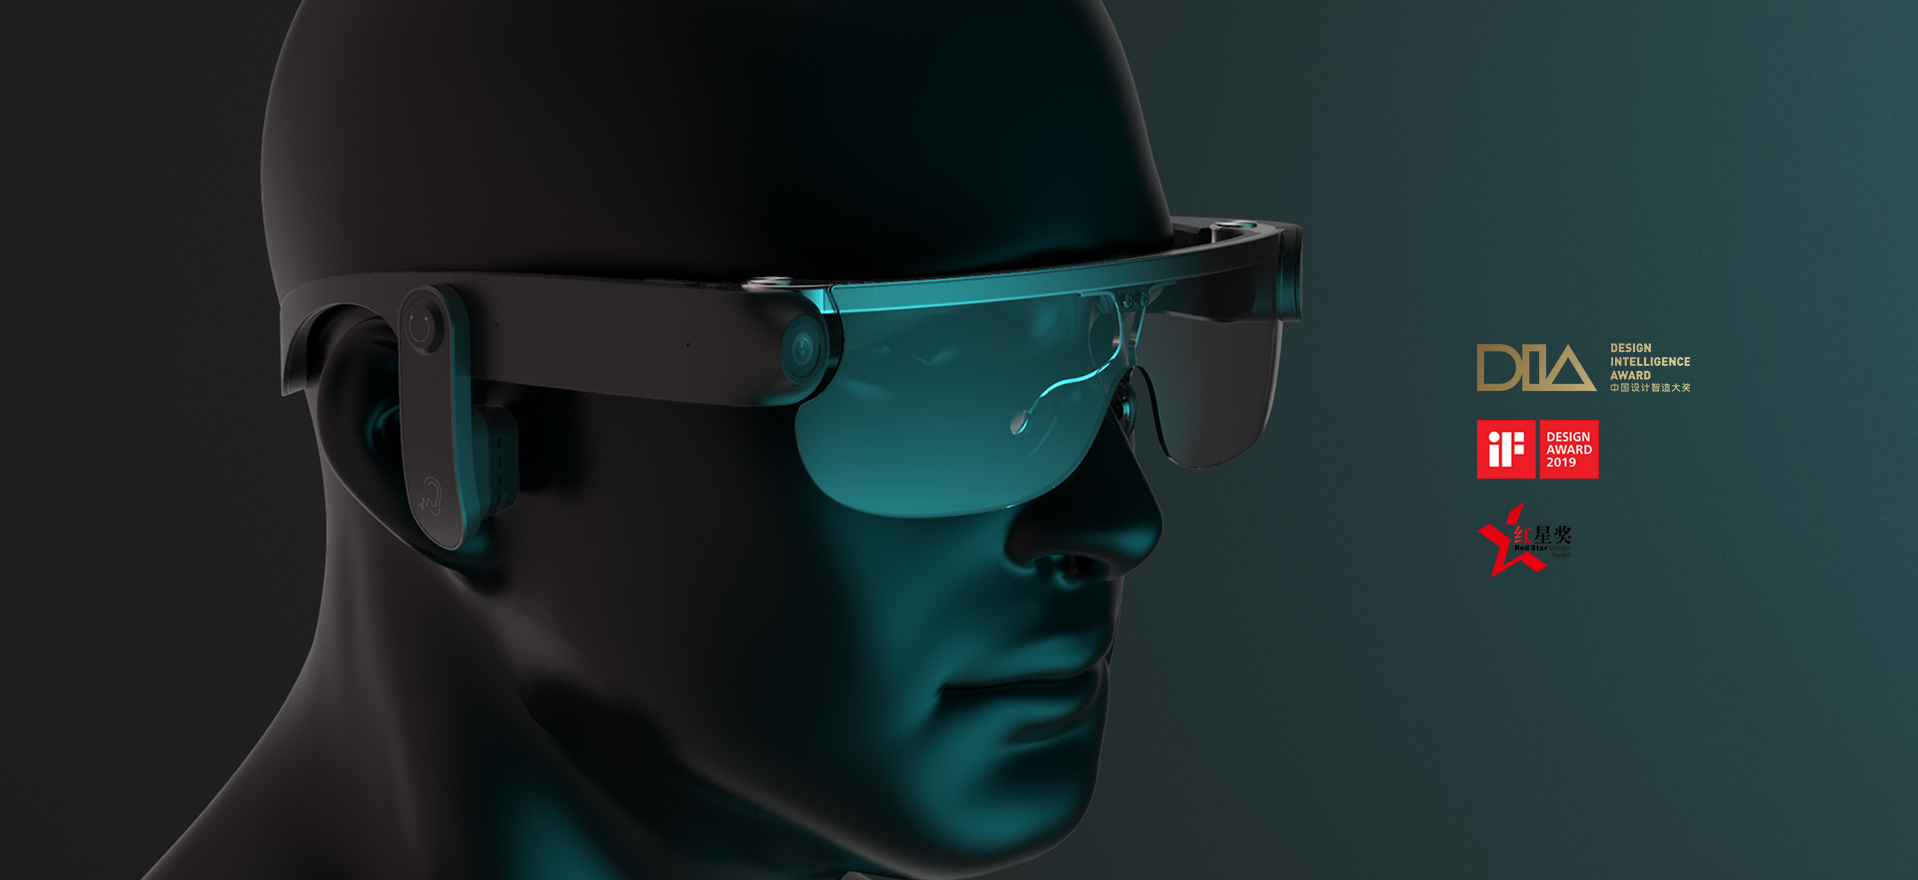 盲人视觉辅助眼镜二代.jpg